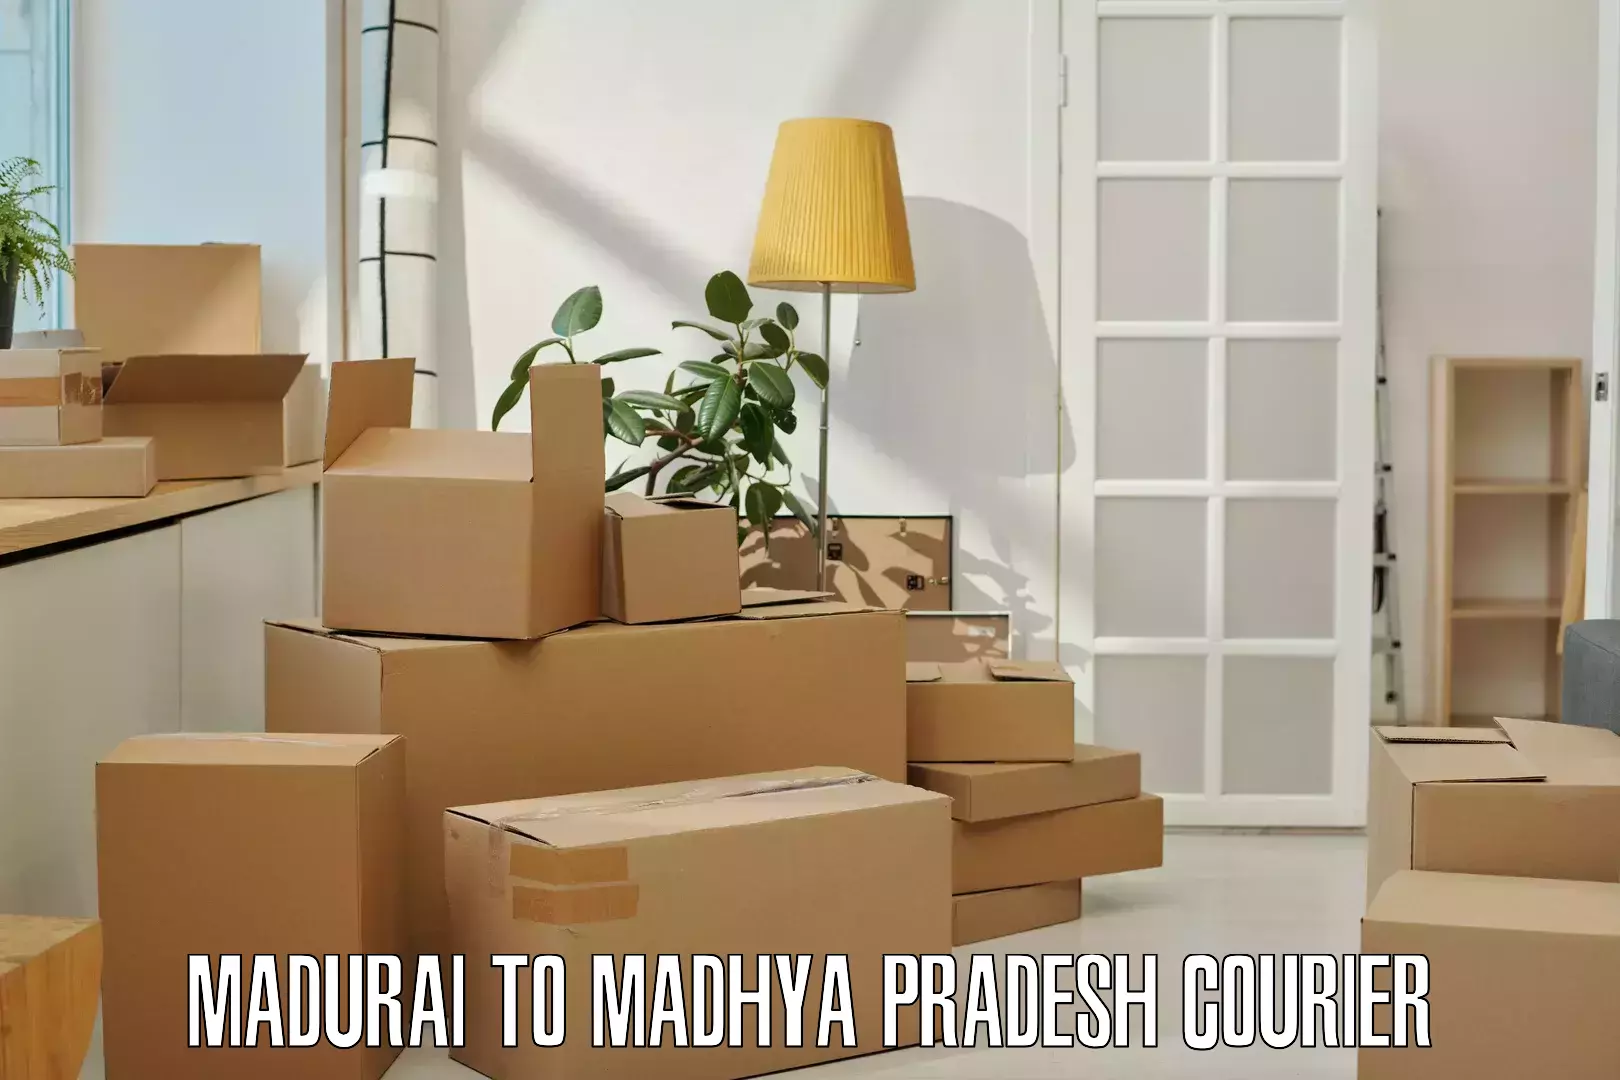 Easy access courier services Madurai to Ashoknagar